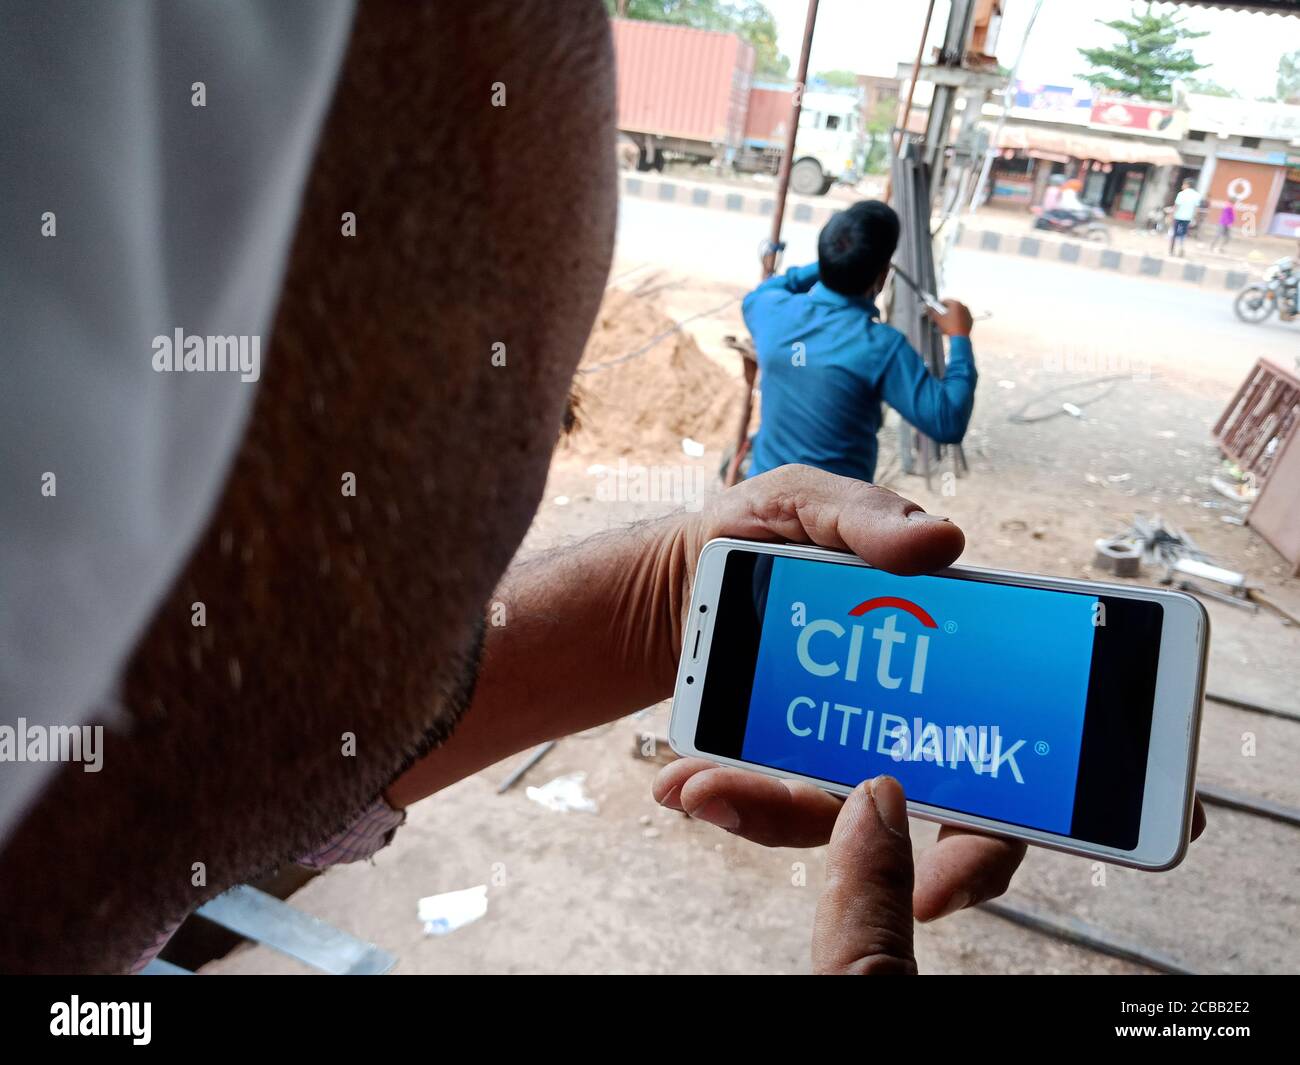 DISTRETTO KATNI, INDIA - 02 GIUGNO 2020: Un uomo indiano che detiene smartphone con visualizzazione del logo online della banca Citi sullo schermo, istruzione bancaria moderna con Foto Stock